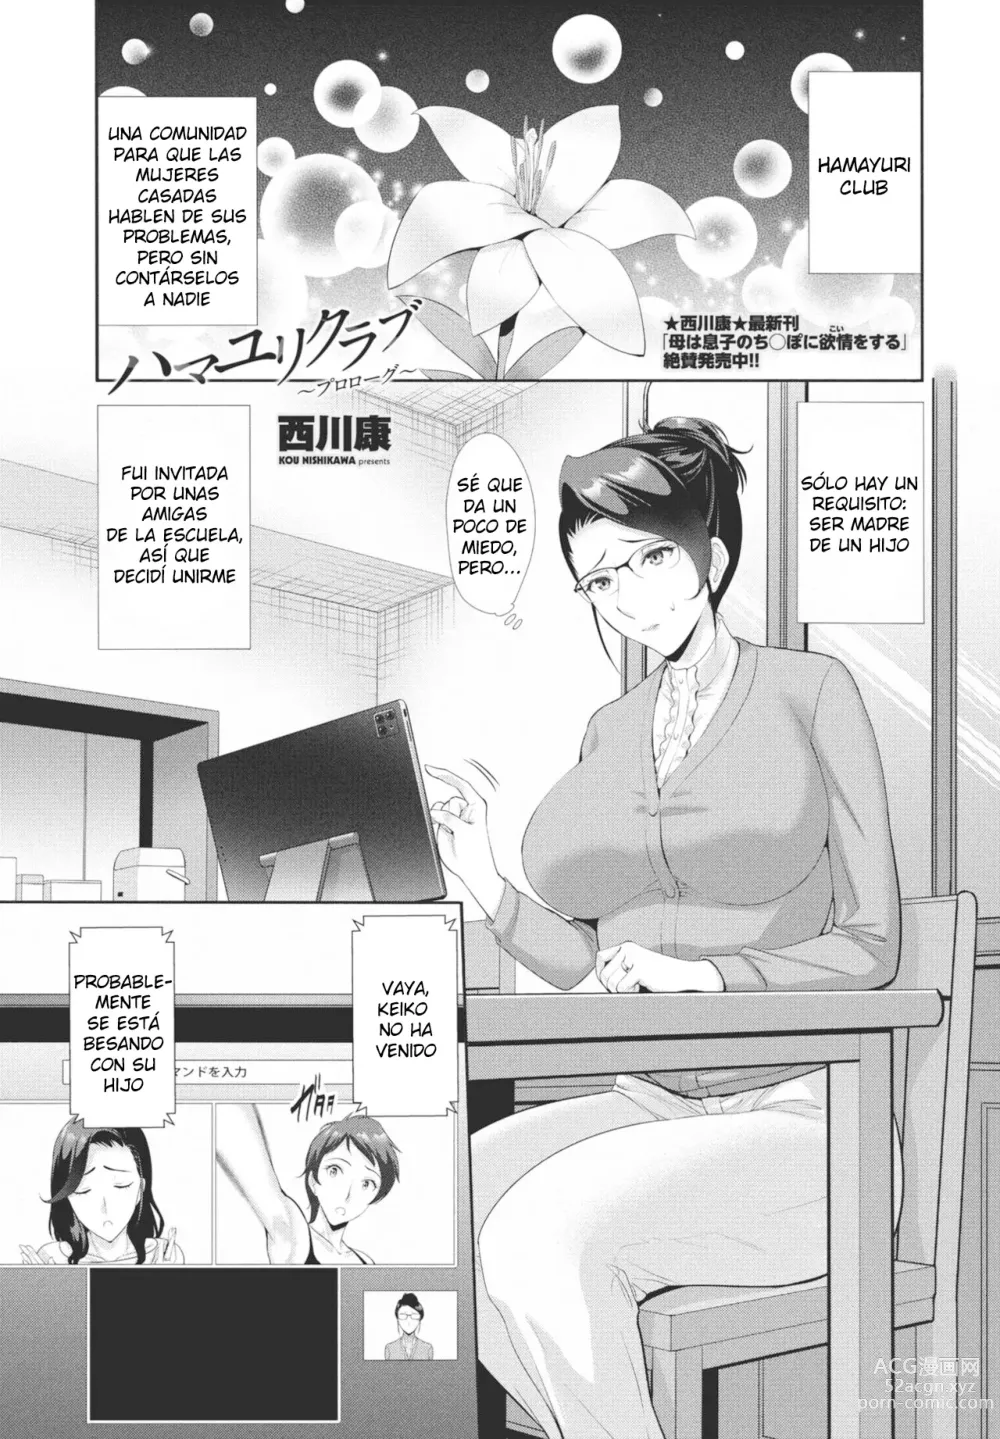 Page 1 of manga Hamayuri Club ~Prologue~